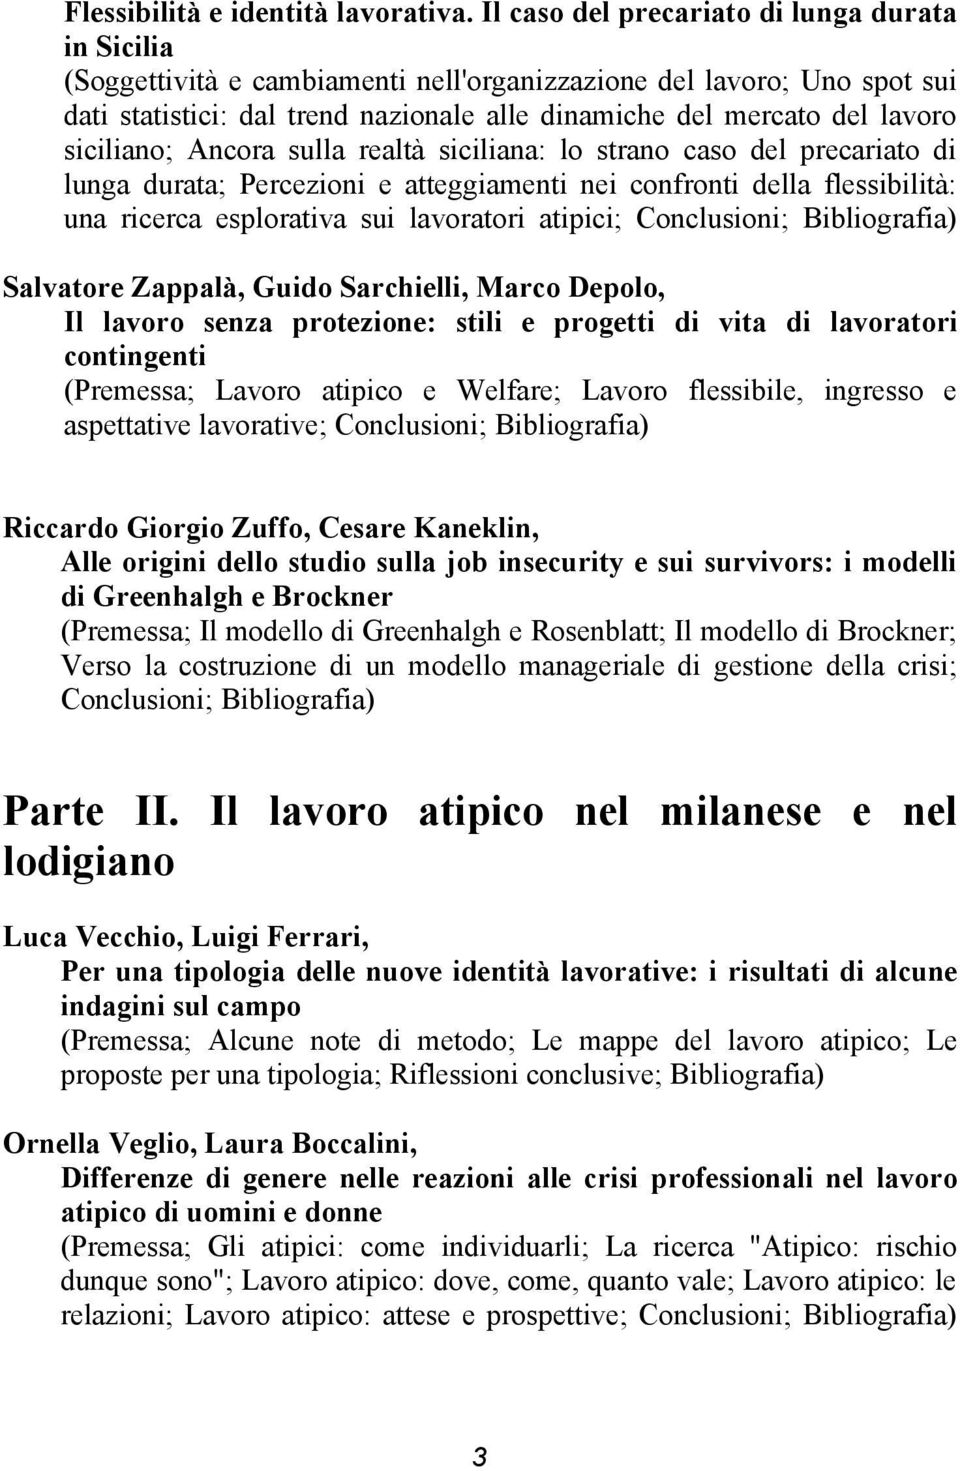 siciliano; Ancora sulla realtà siciliana: lo strano caso del precariato di lunga durata; Percezioni e atteggiamenti nei confronti della flessibilità: una ricerca esplorativa sui lavoratori atipici;